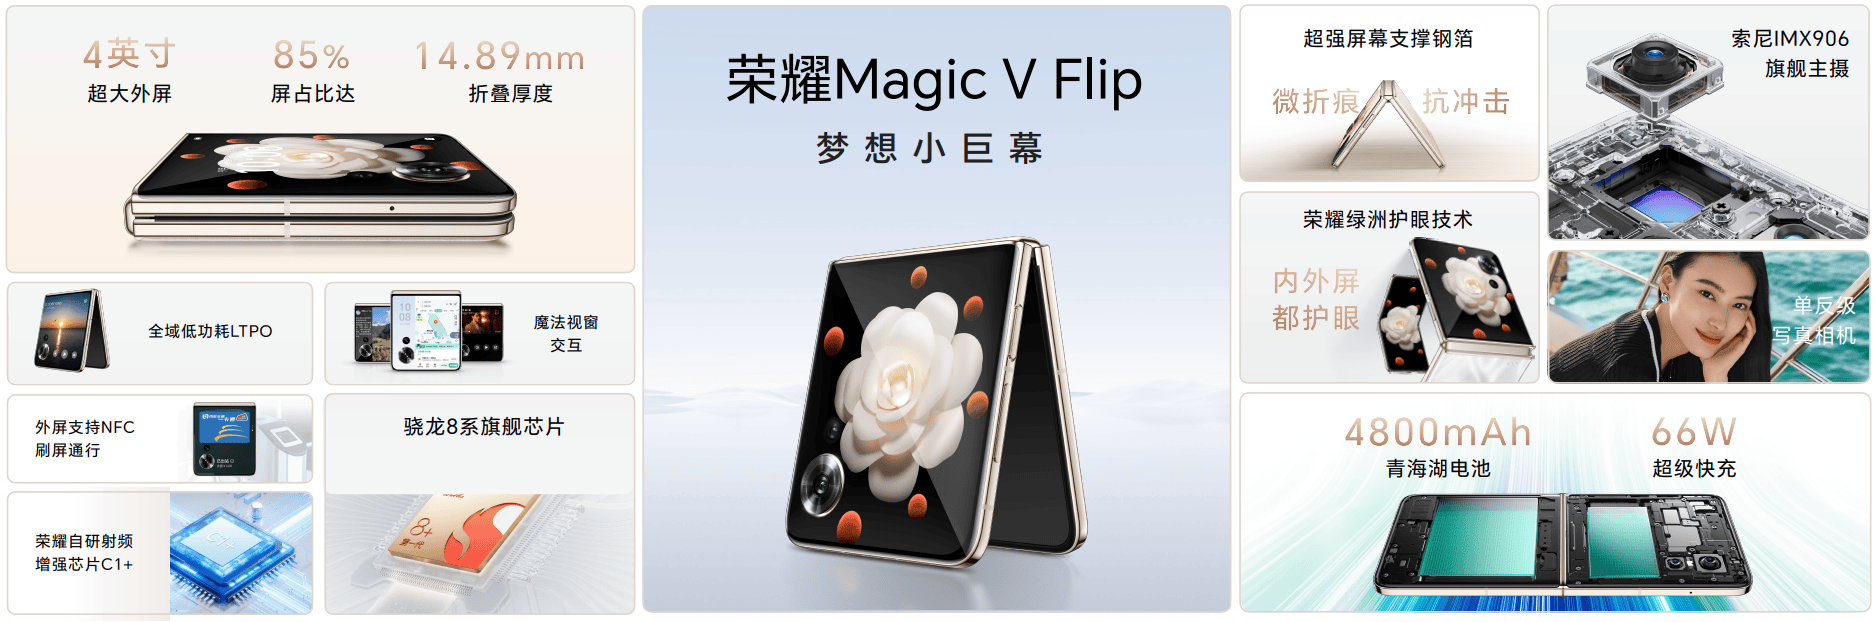 荣耀Magic V Flip发布 打造全形态折叠屏矩阵-锋巢网